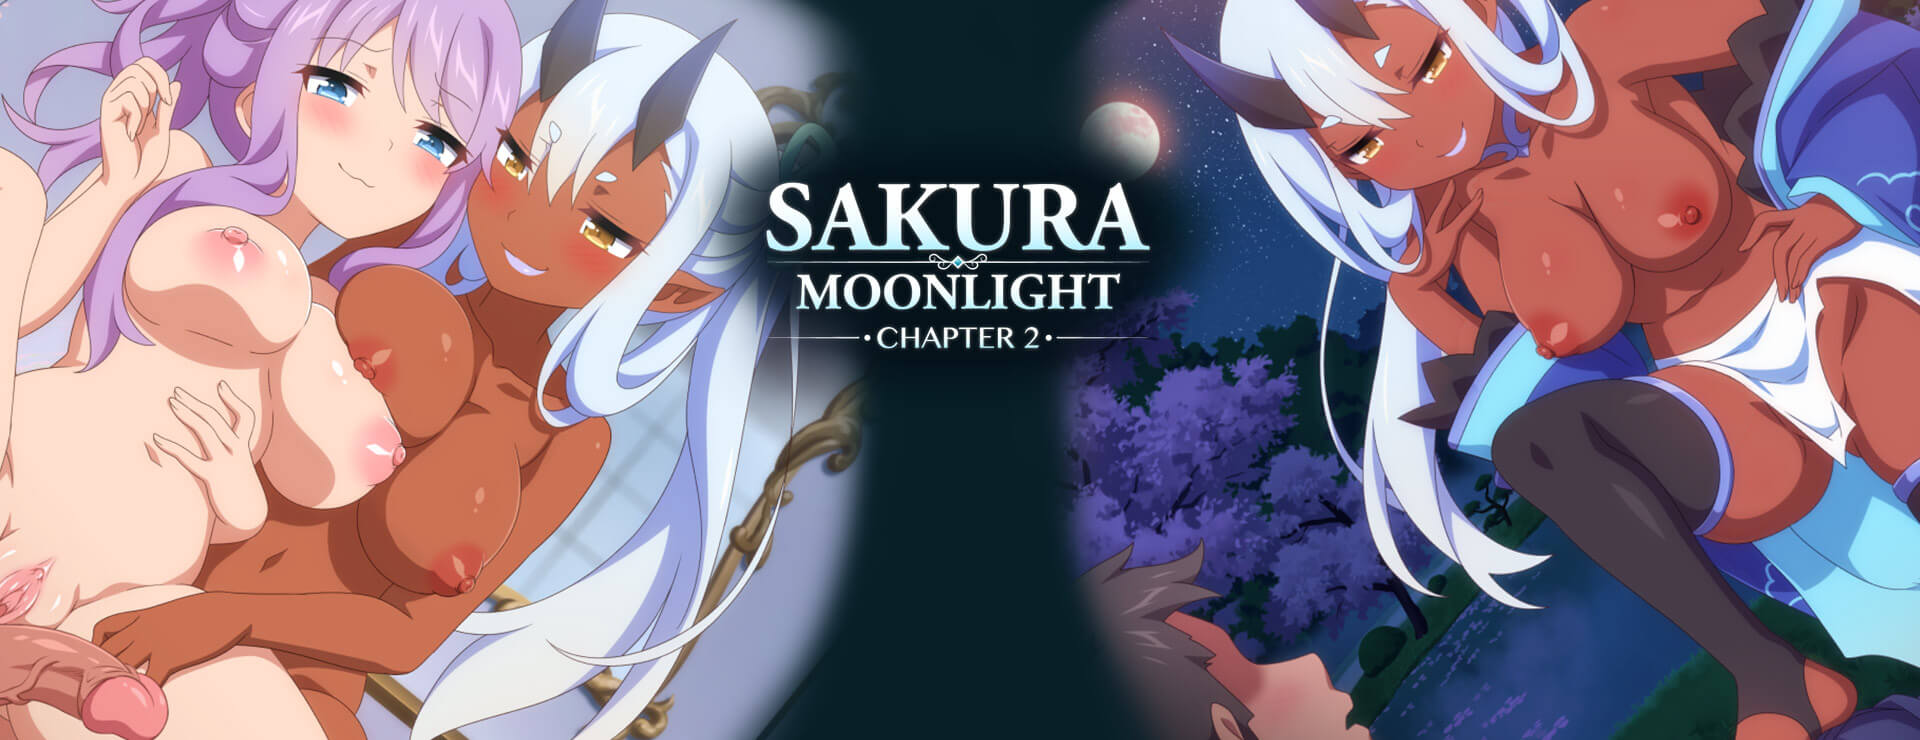 Sakura Moonlight Chapter 2 - ビジュアルノベル ゲーム